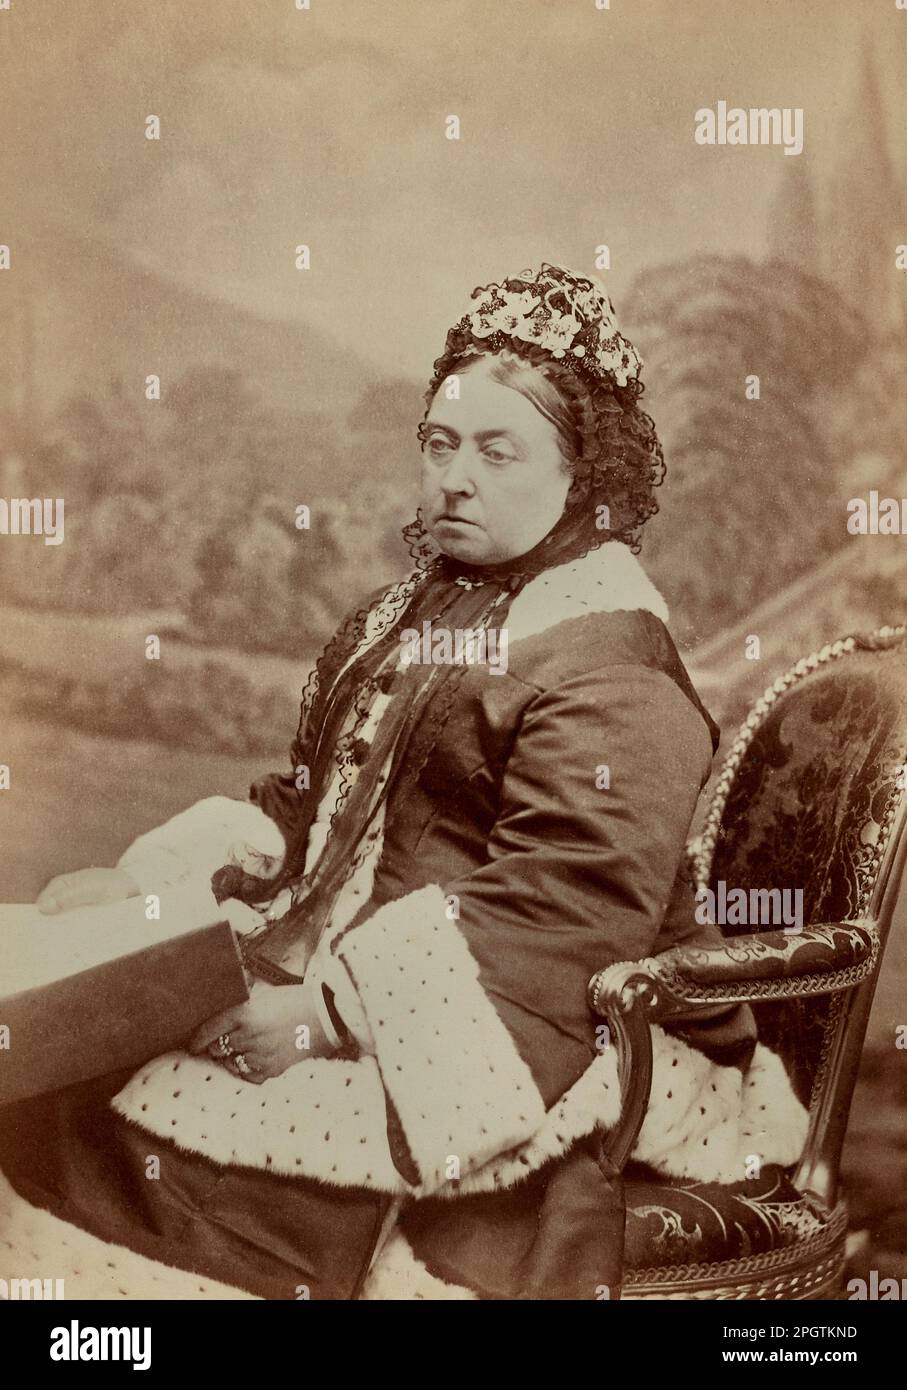 Porträt der Queen Victoria (1819-1901) Fotografie Downey Stockfoto